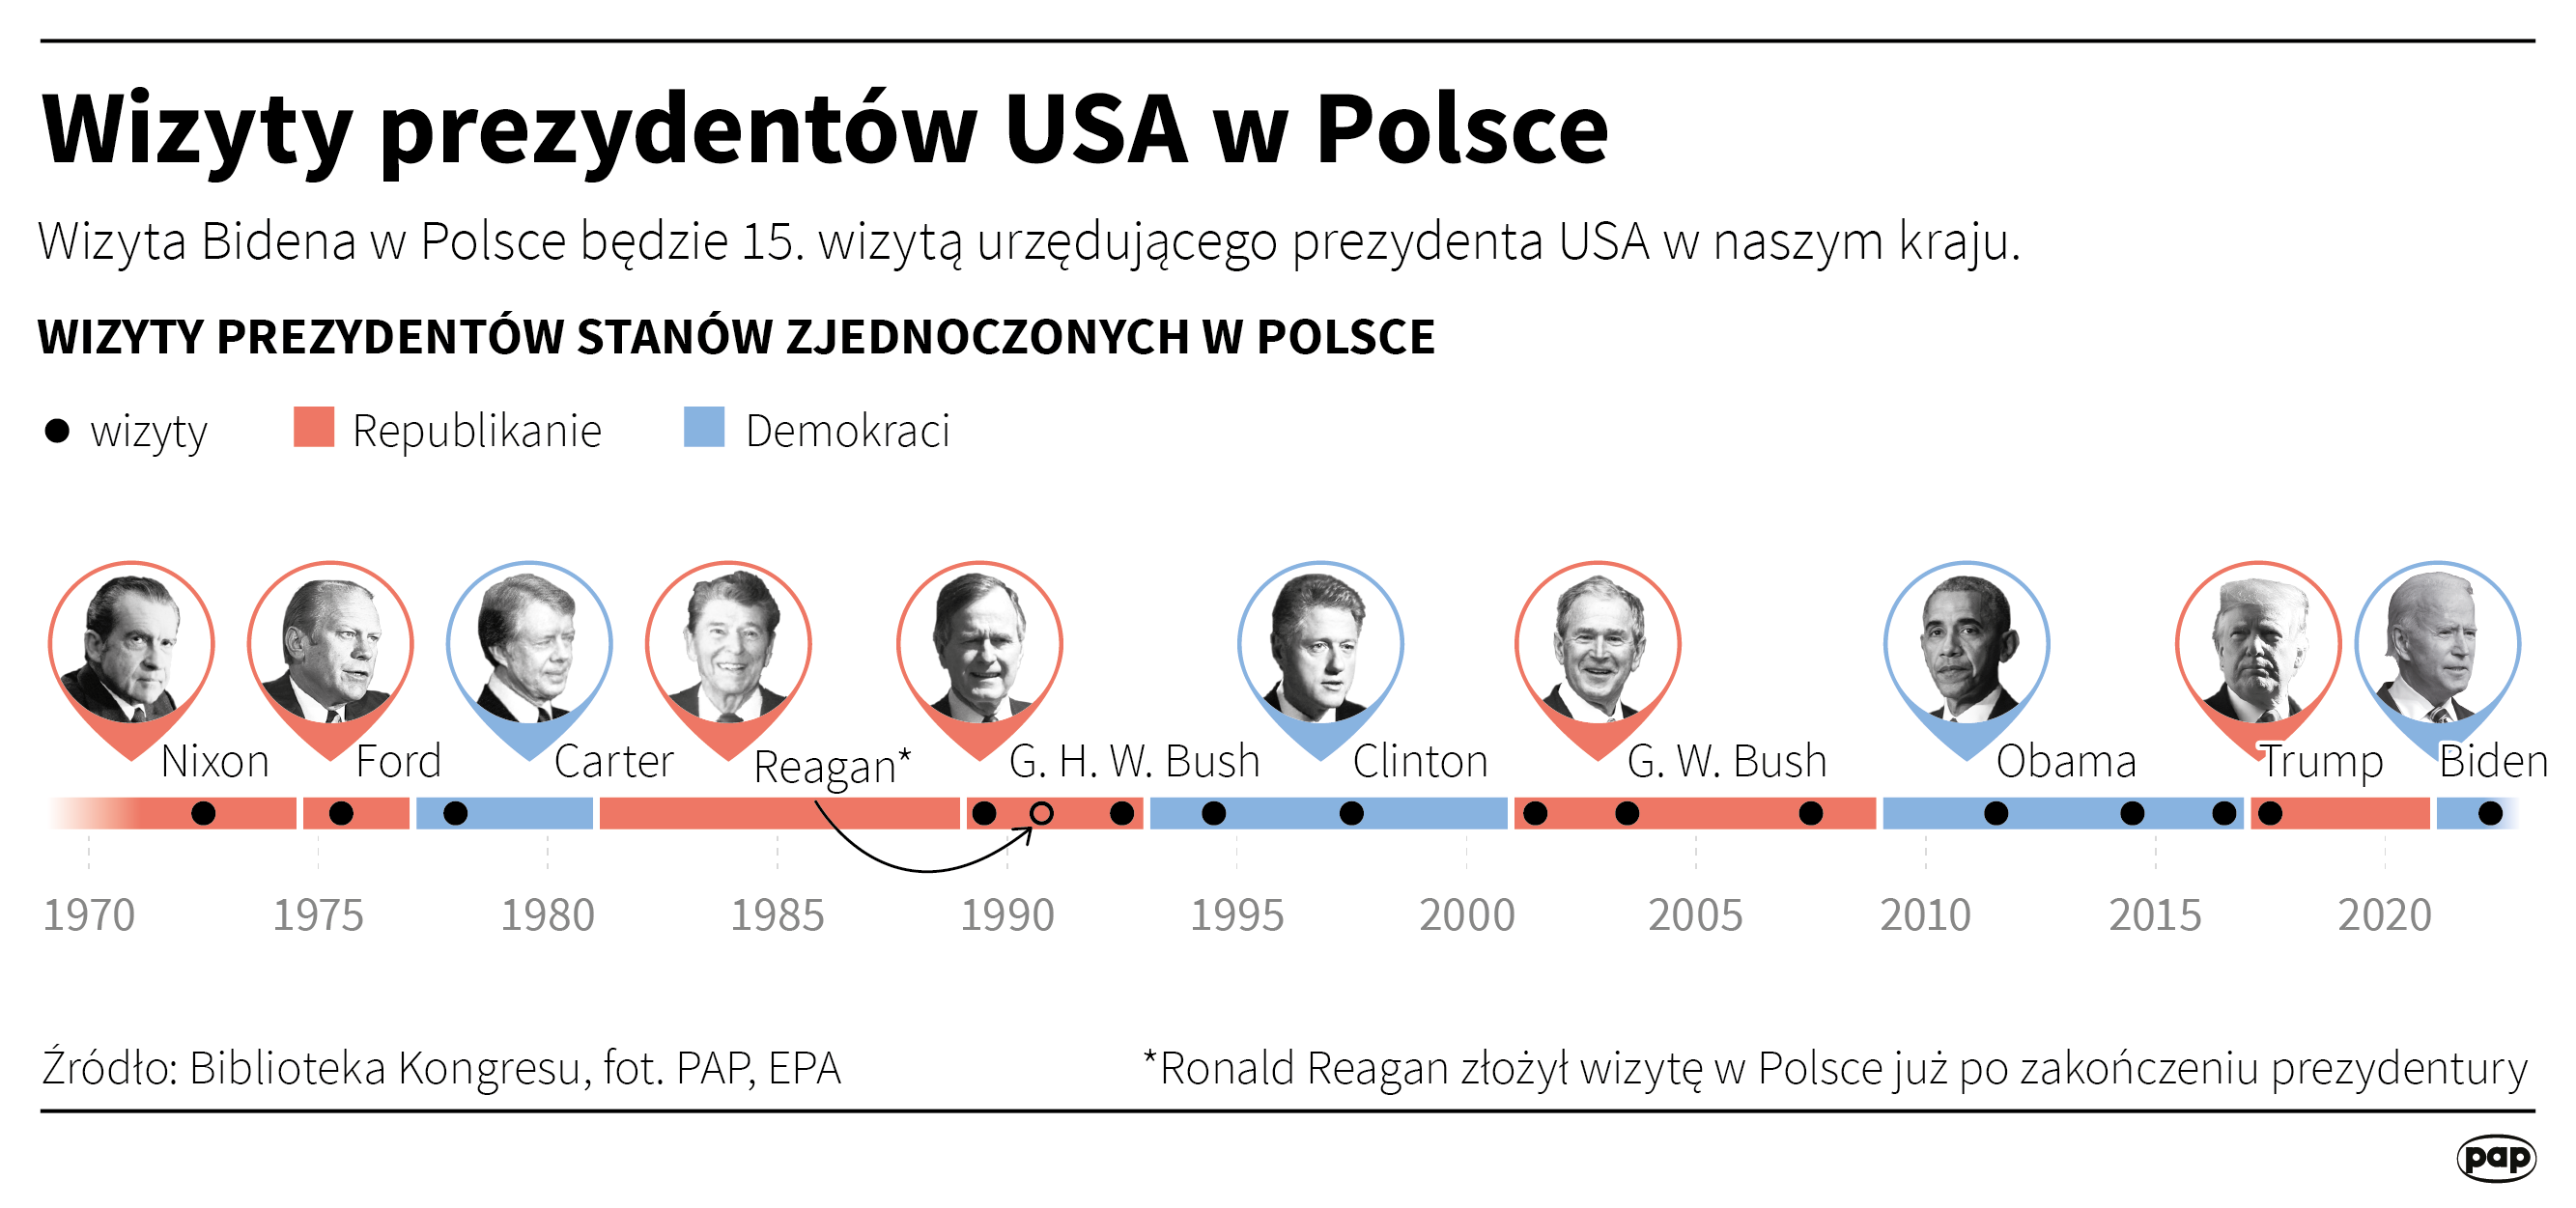 Wizyty prezydentów USA w Polsce, autor: PAP/Maciej Zieliński 